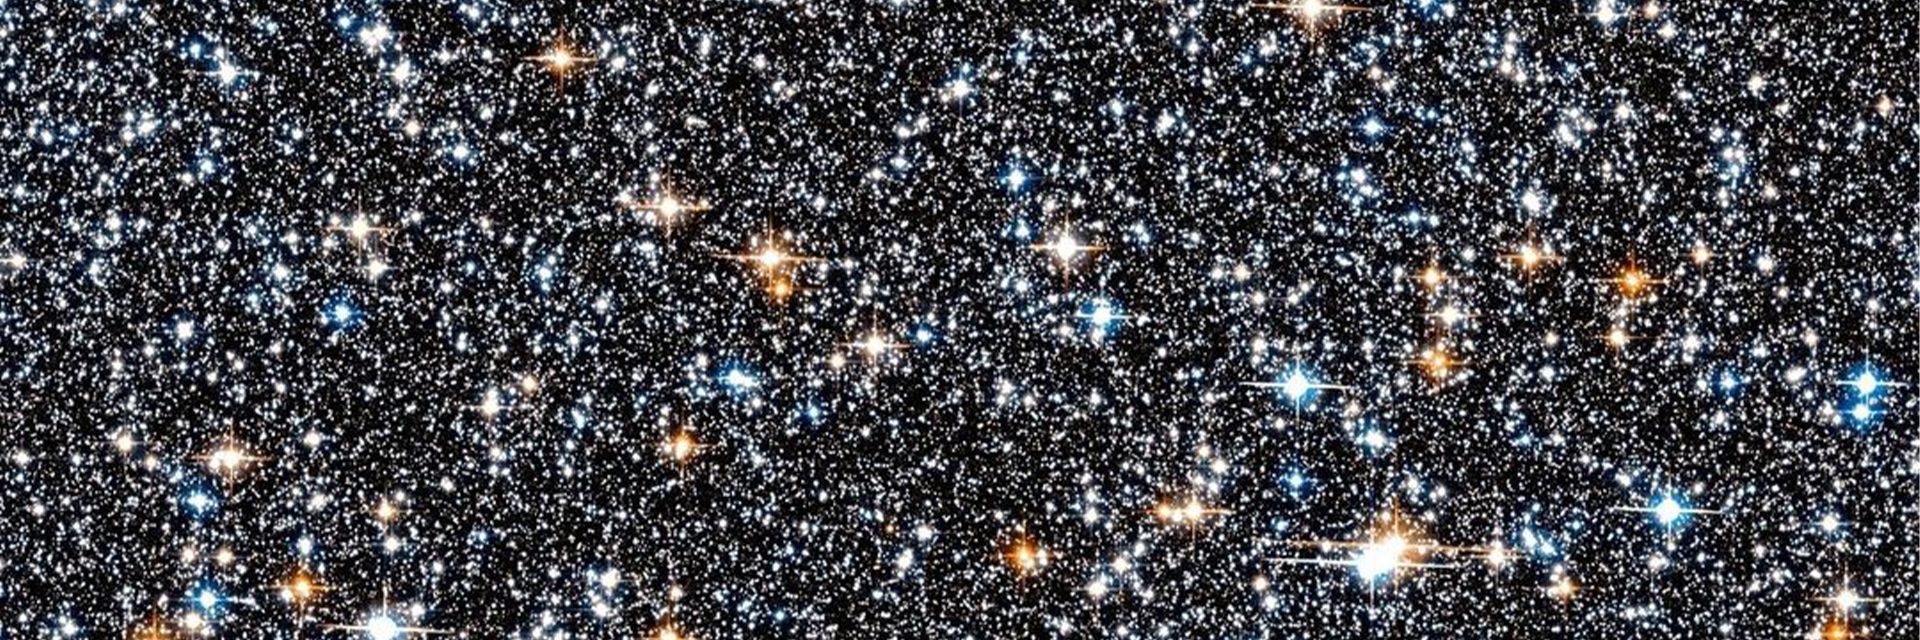 El identificador oficial de la Nasa compartió la imagen de una colección de estos monumentos galácticos a 26,000 años luz de la Tierra, captados por el Telescopio Hubble.